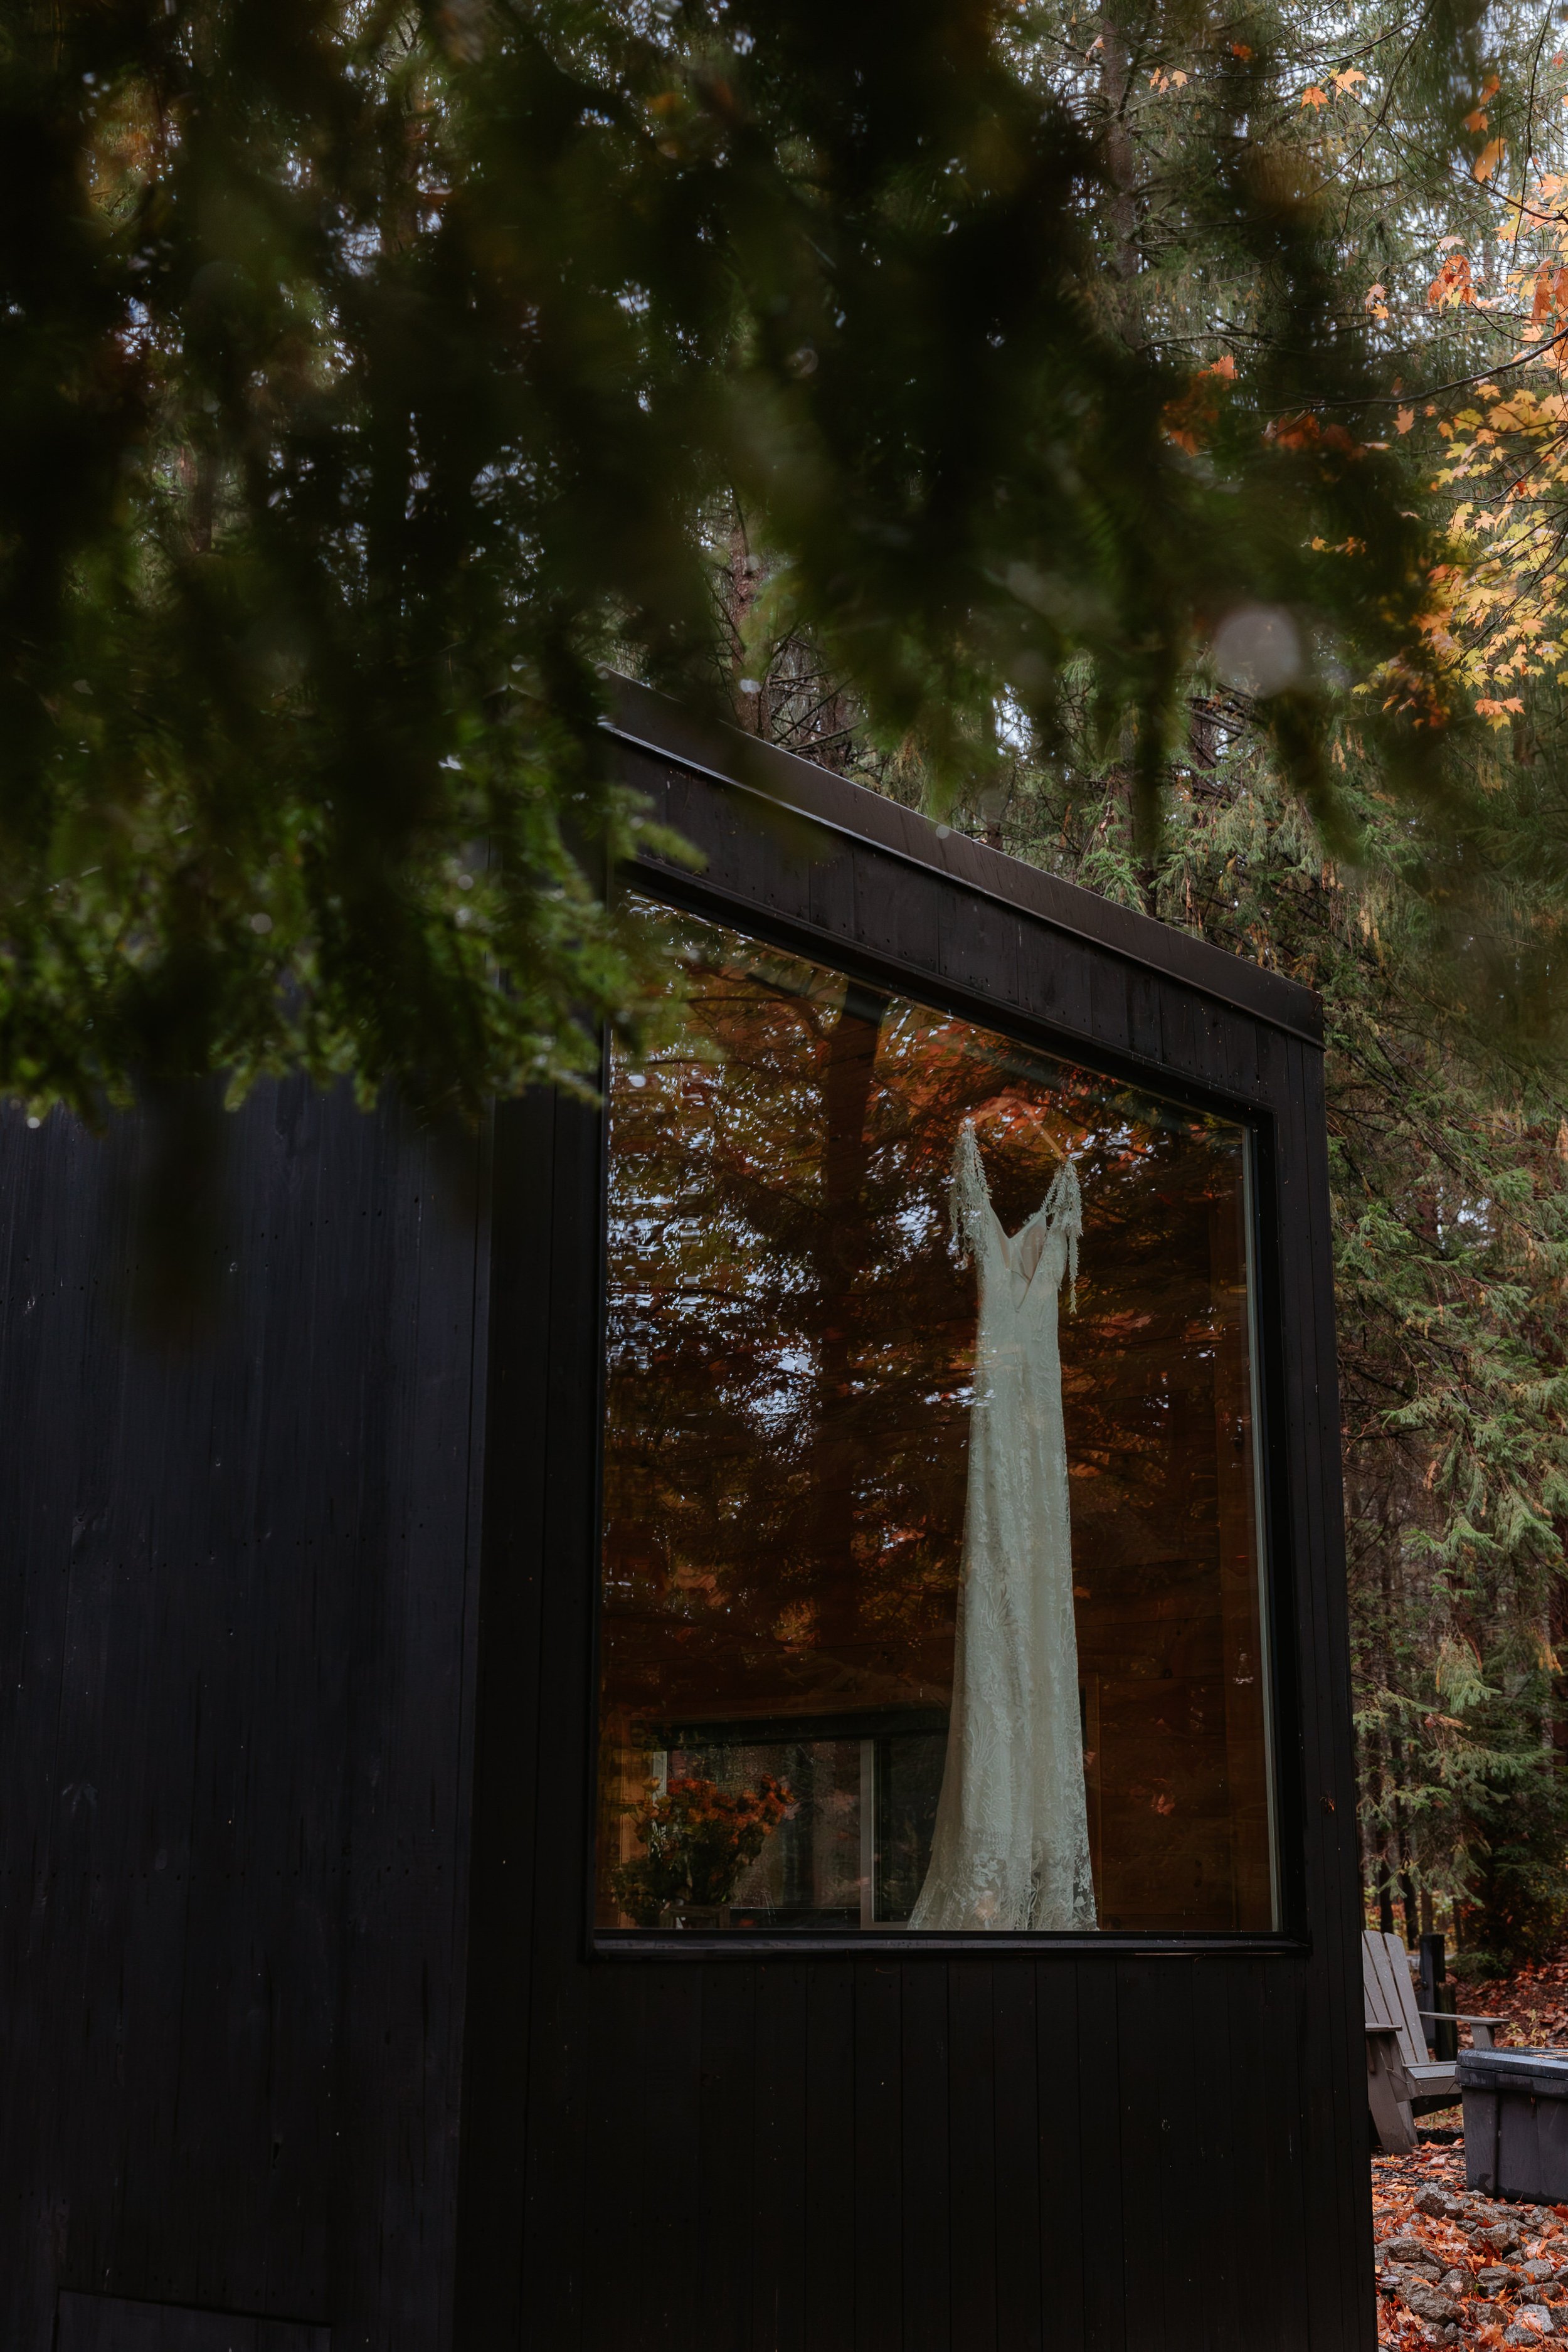 Wedding dress hangs in the window of a black cabin.